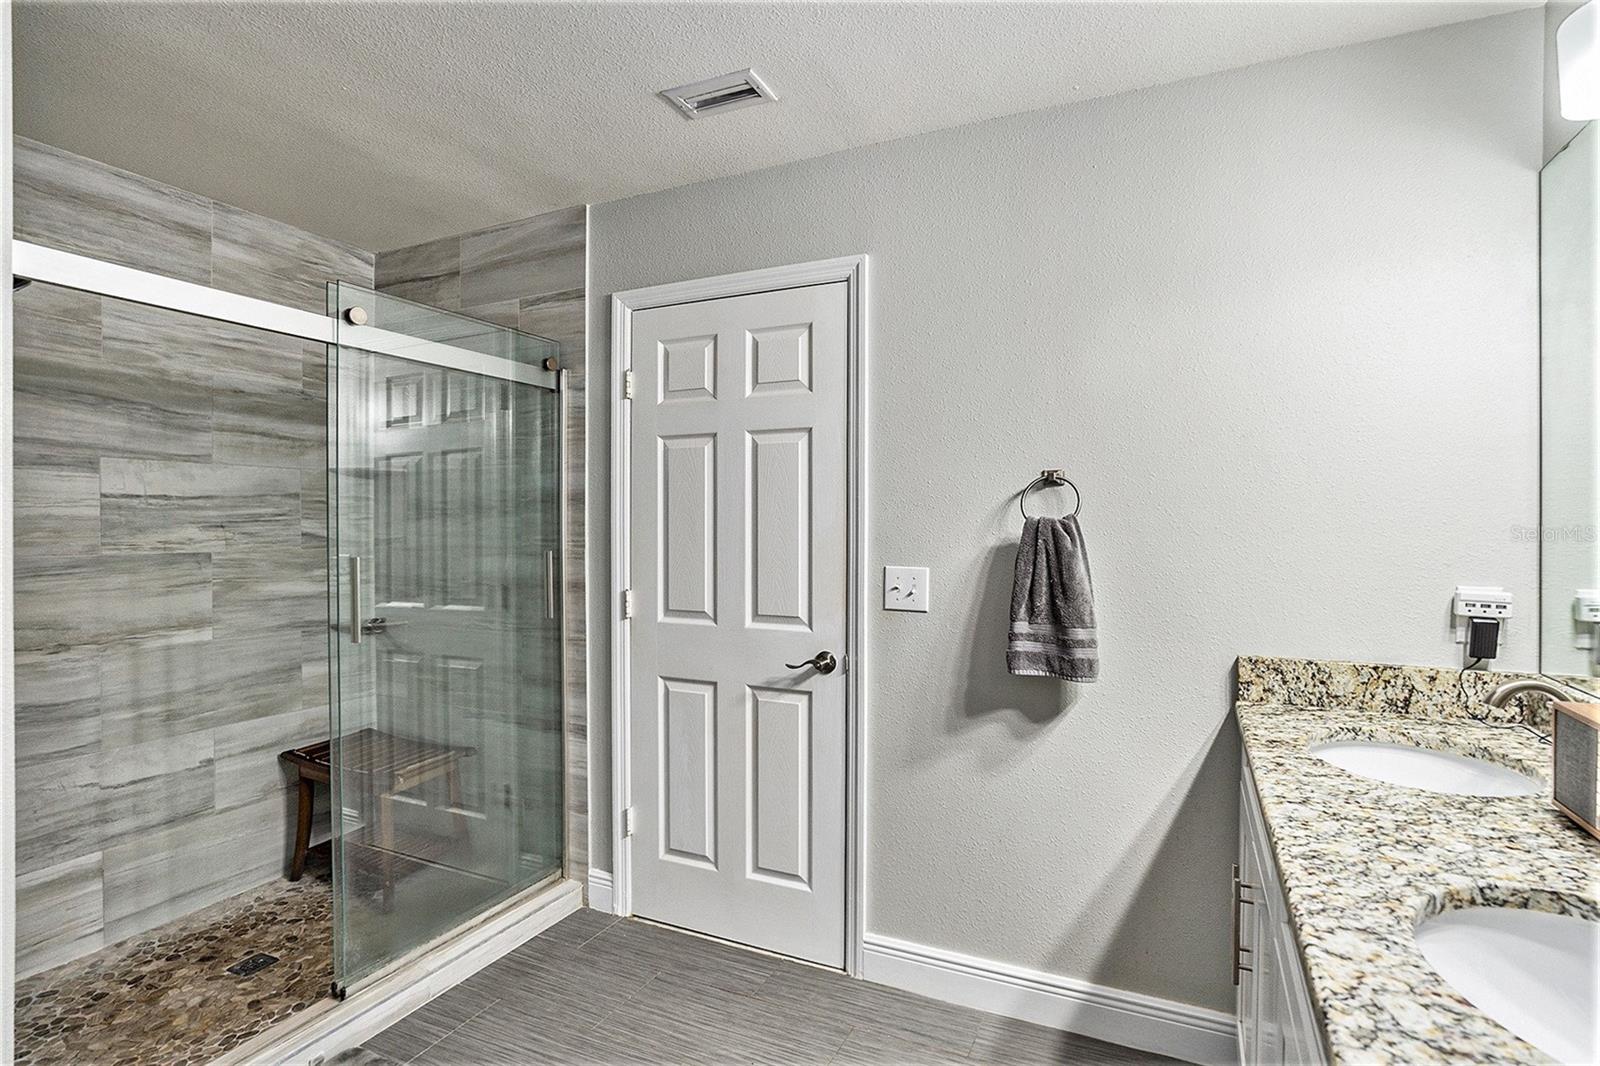 Primary Bathroom Walk-in Shower with Tile Backsplash